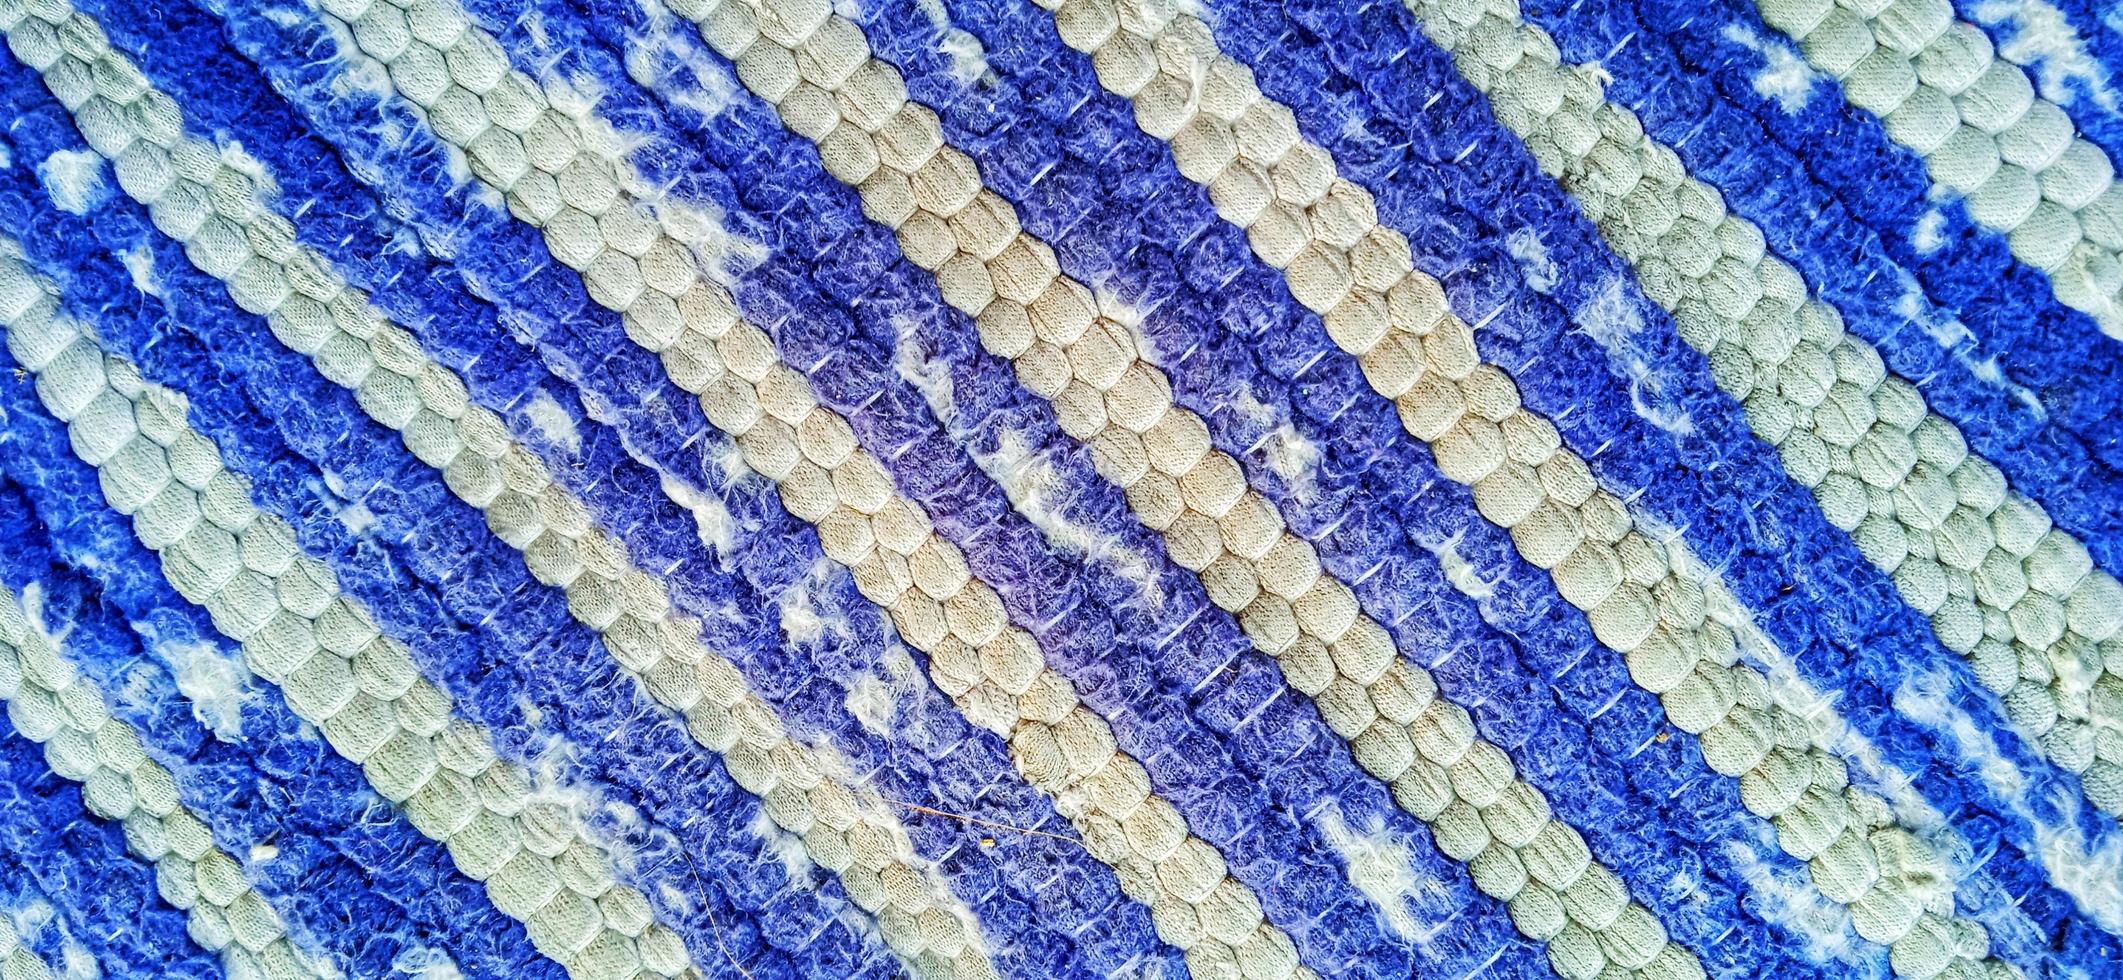 textura de alfombra de tela de rayas rotas y aburridas colores azul marino, gris oscuro y blanco. foto